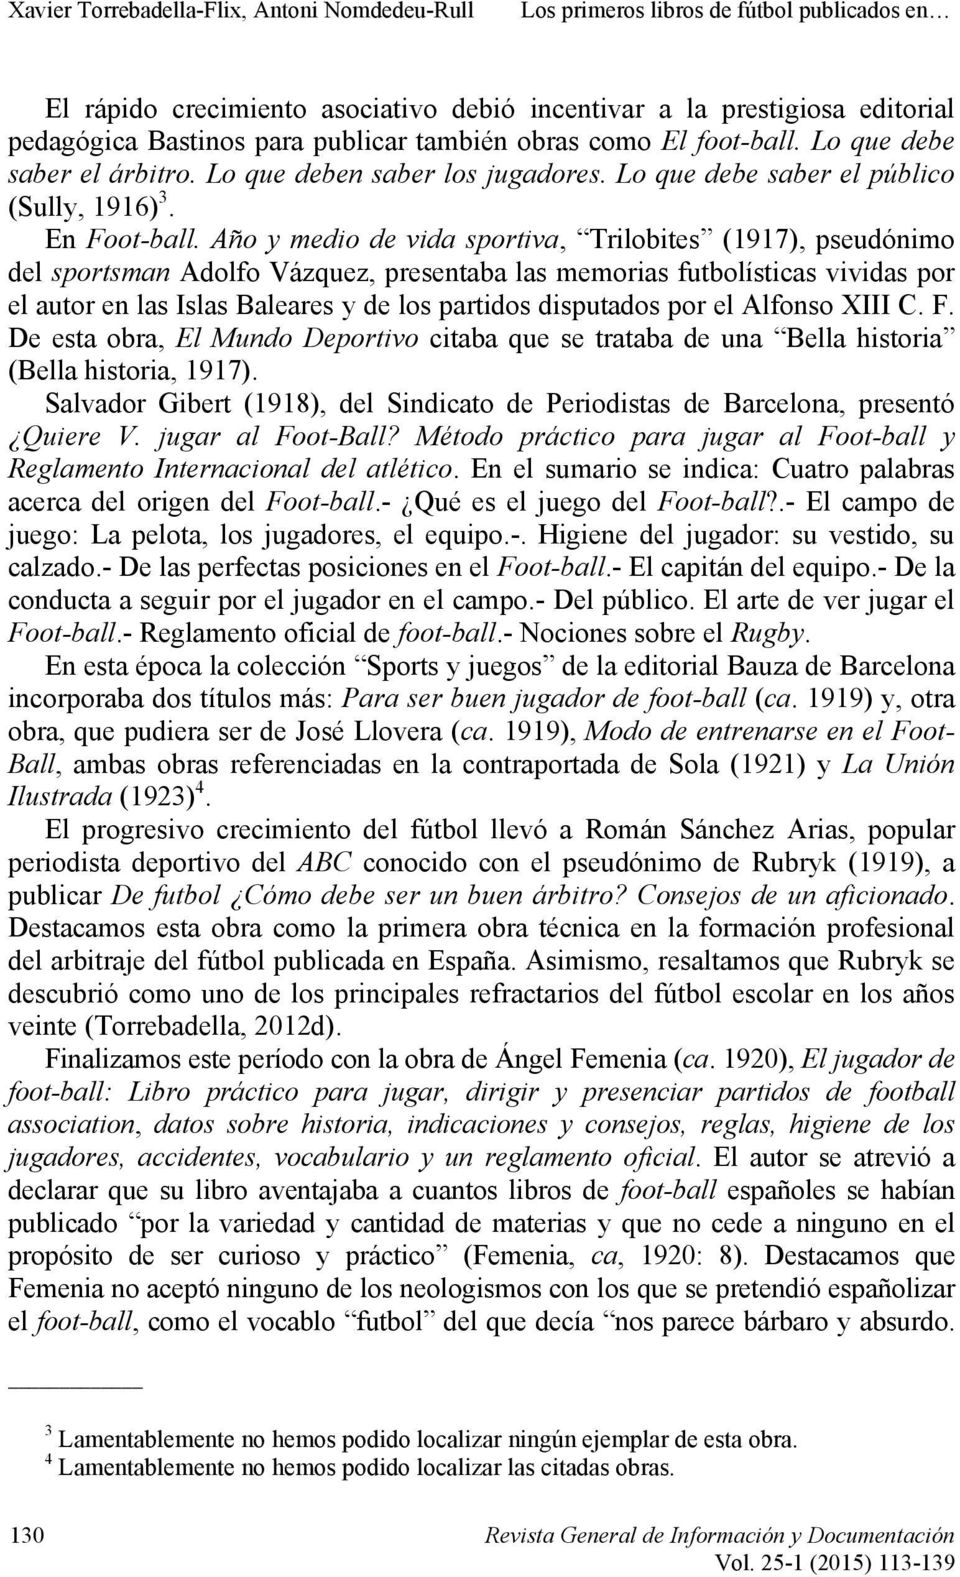 Año y medio de vida sportiva, Trilobites (1917), pseudónimo del sportsman Adolfo Vázquez, presentaba las memorias futbolísticas vividas por el autor en las Islas Baleares y de los partidos disputados